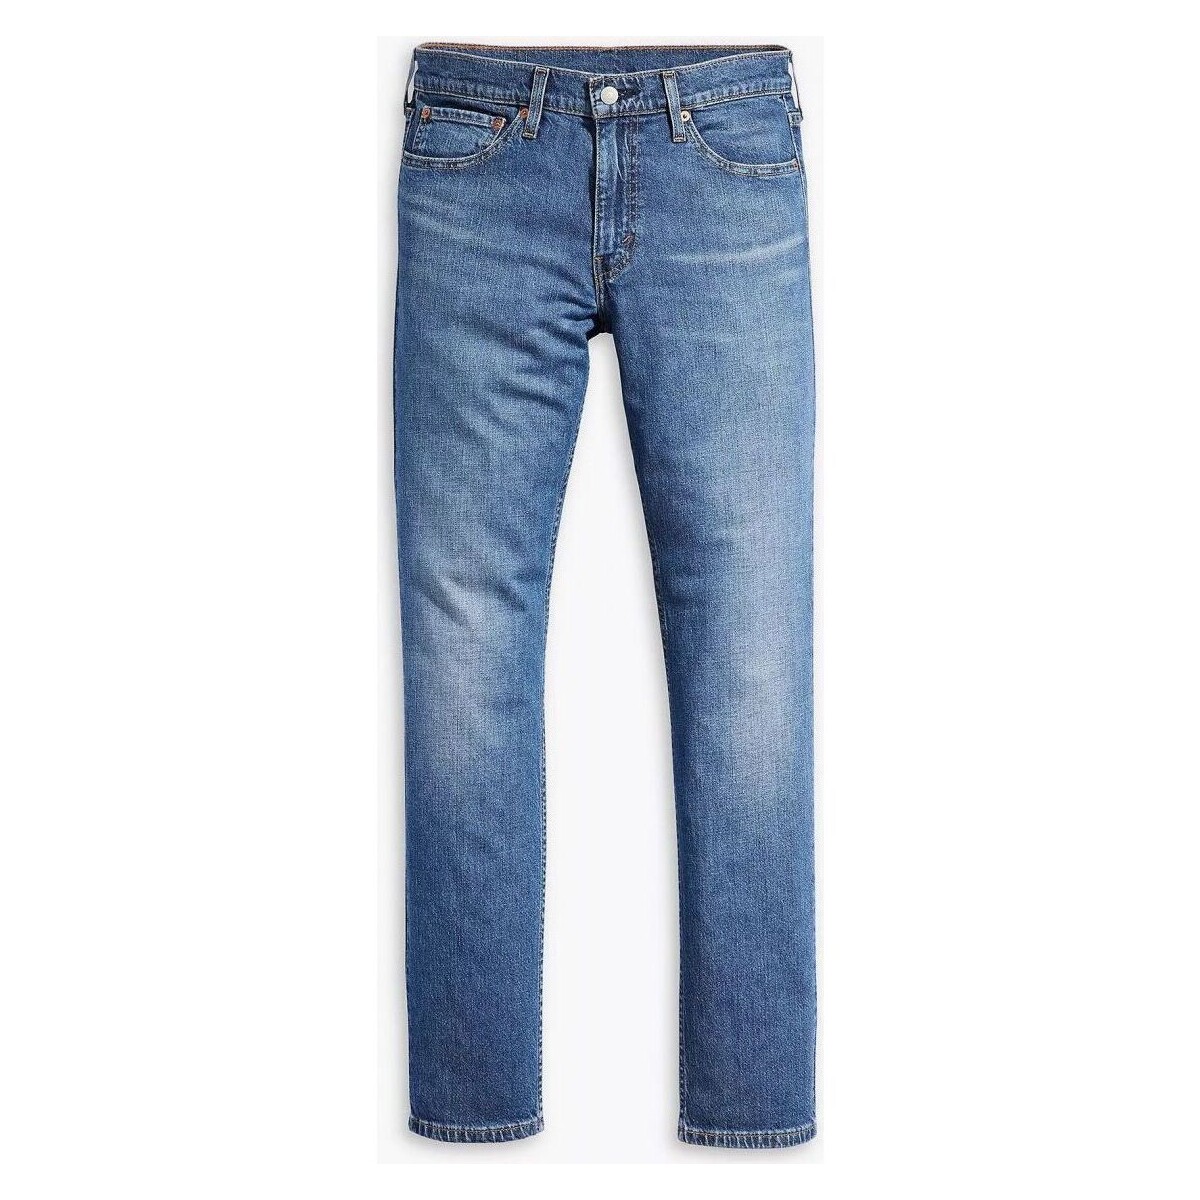 Vêtements Homme Jeans Levi's 04511 5855 - 511 ORIGINAL-WANNA GO BACK Bleu